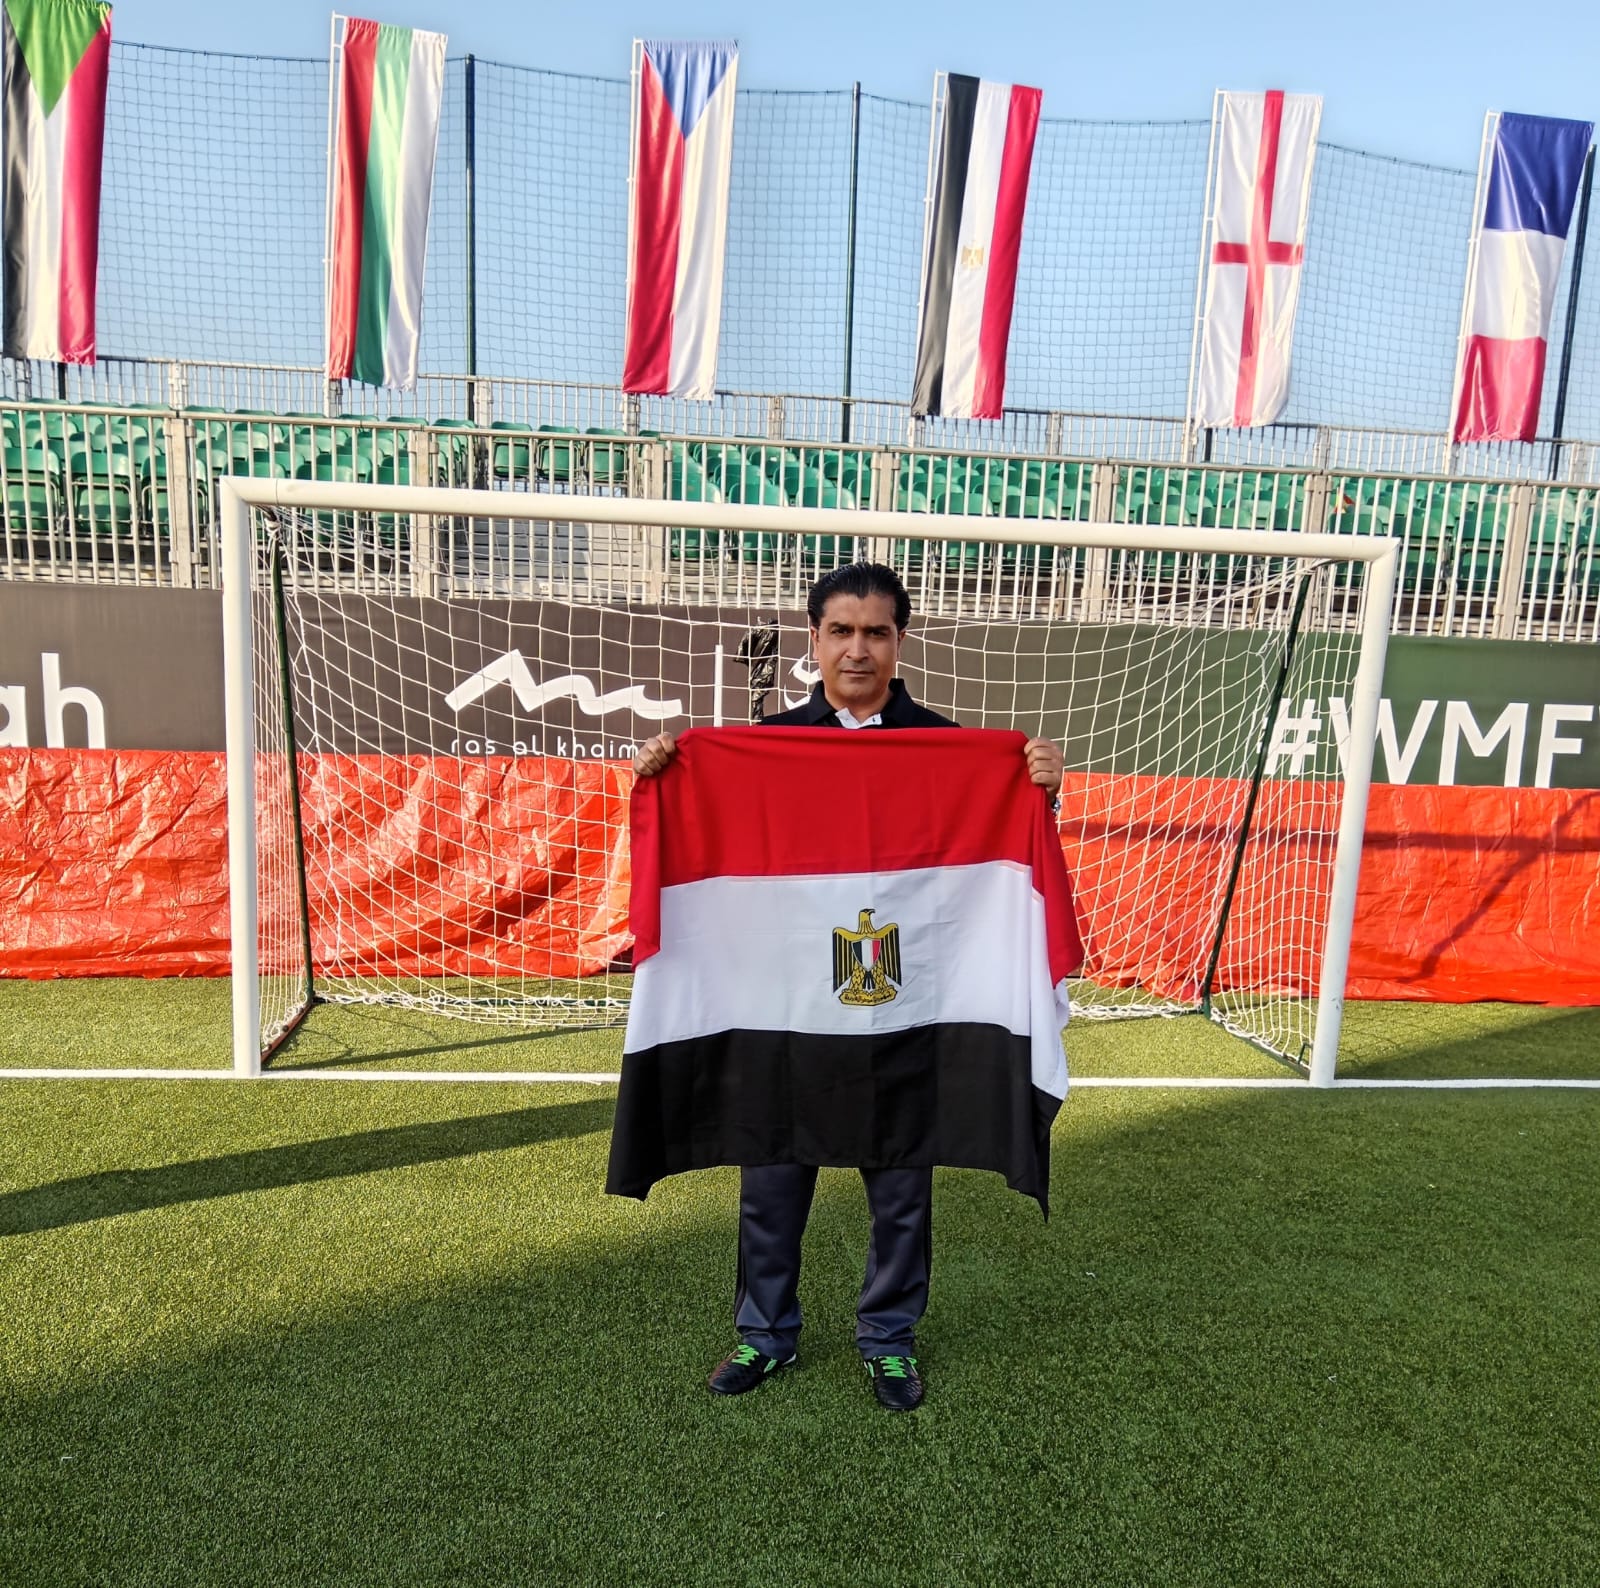 أحمد سمير فخور بما تحقق من إنجاز في أول مشاركة تاريخية في كأس العالم للميني فوتبول بالإمارات.